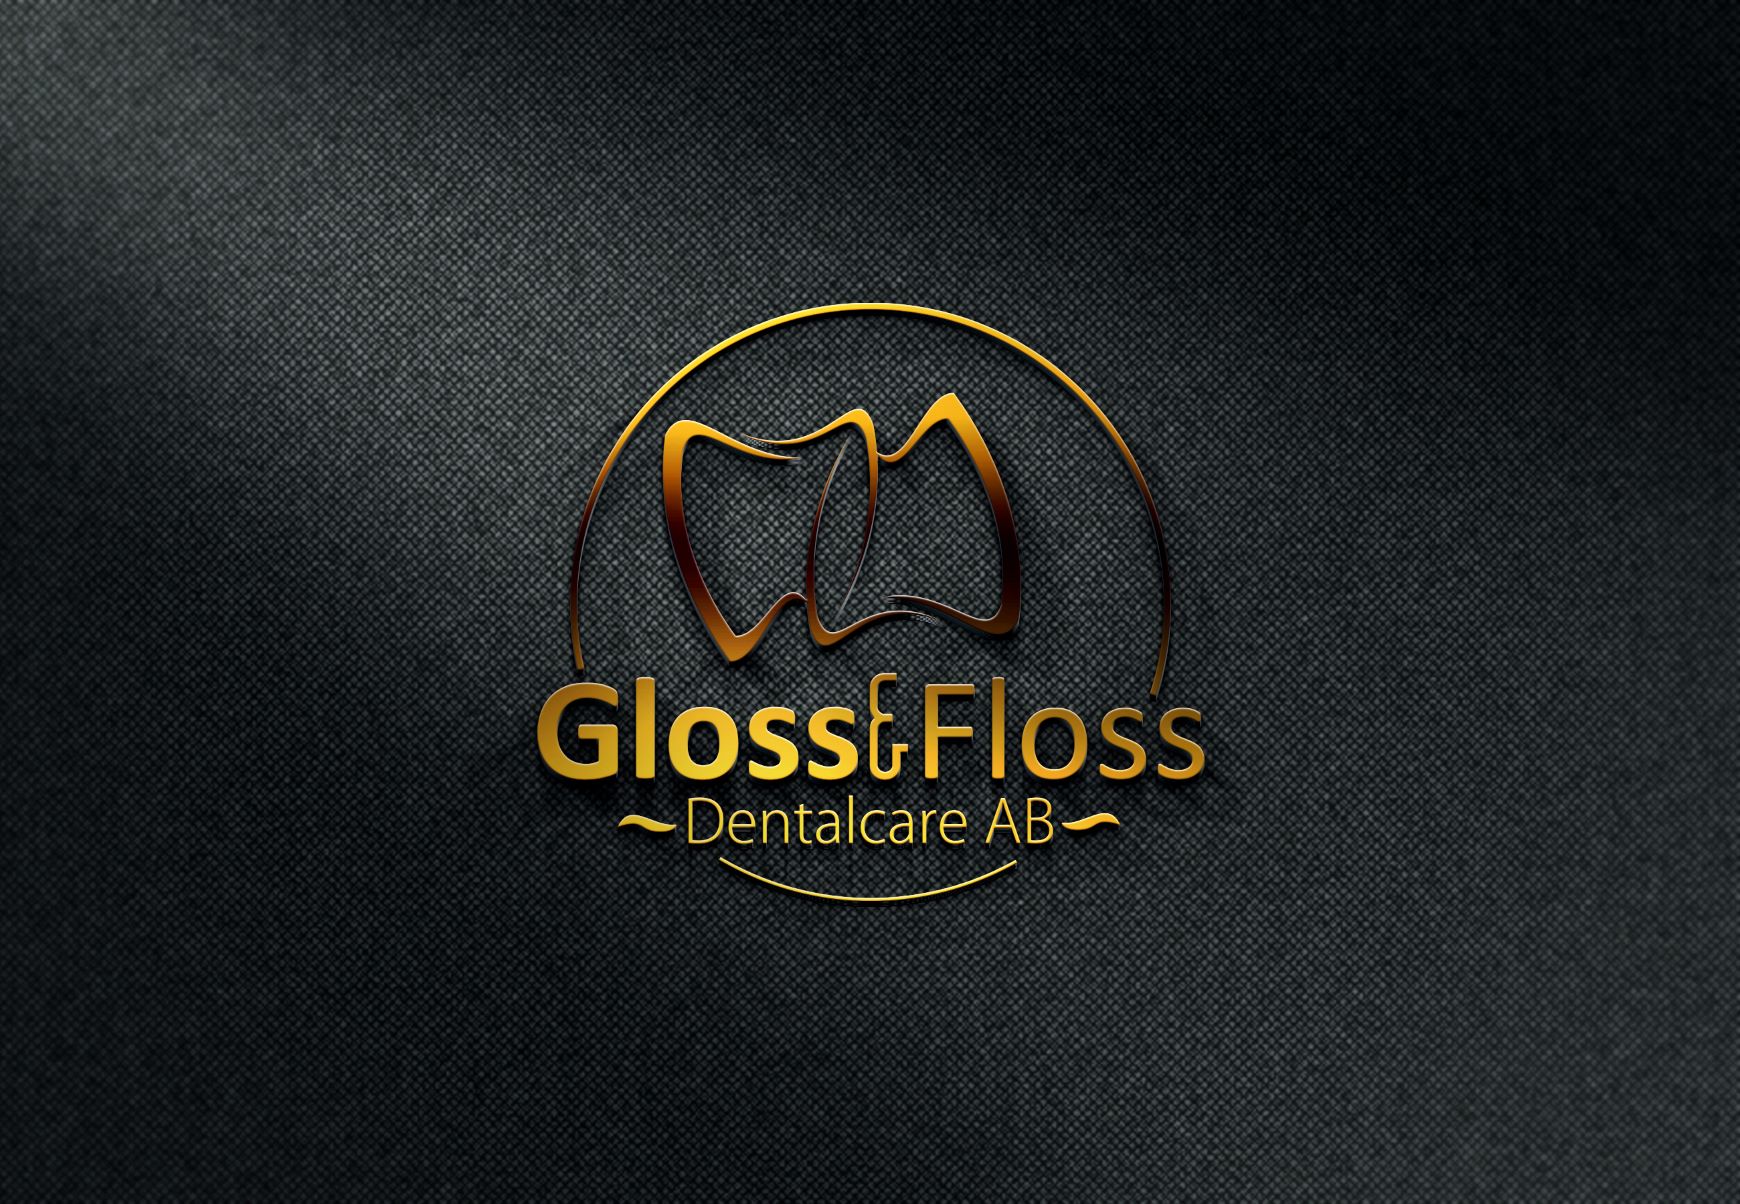 Gloss & Floss Dentalcare AB